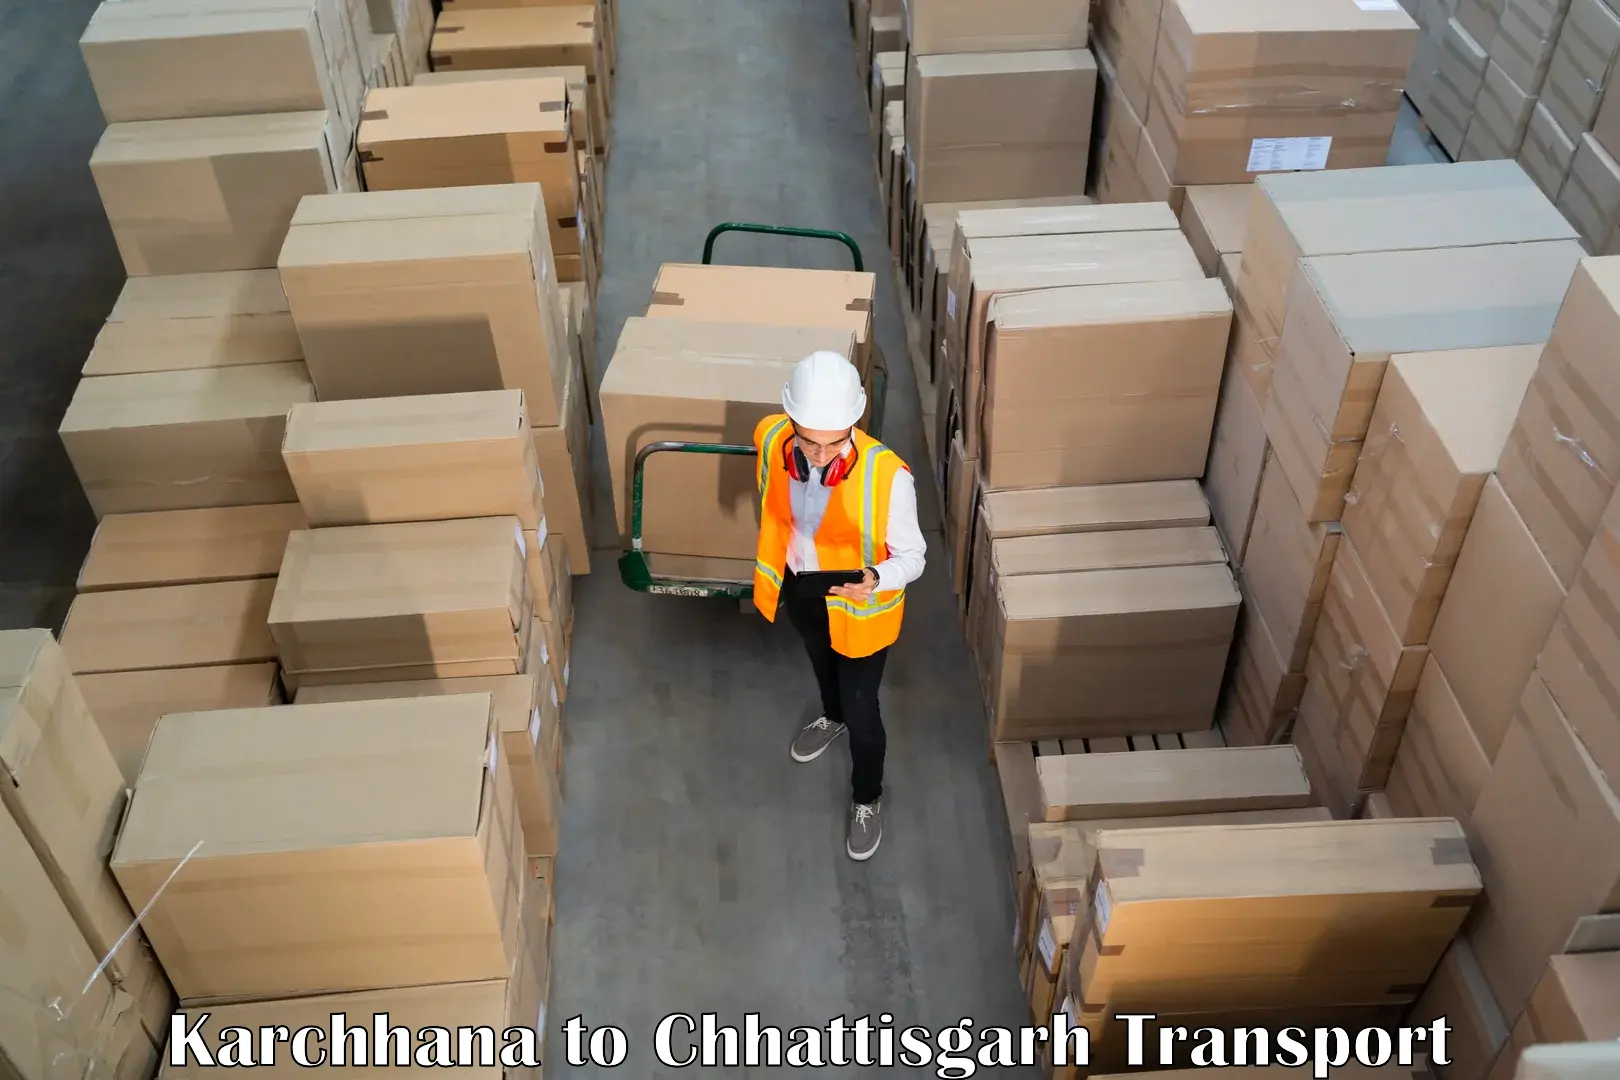 Air freight transport services Karchhana to Bemetara